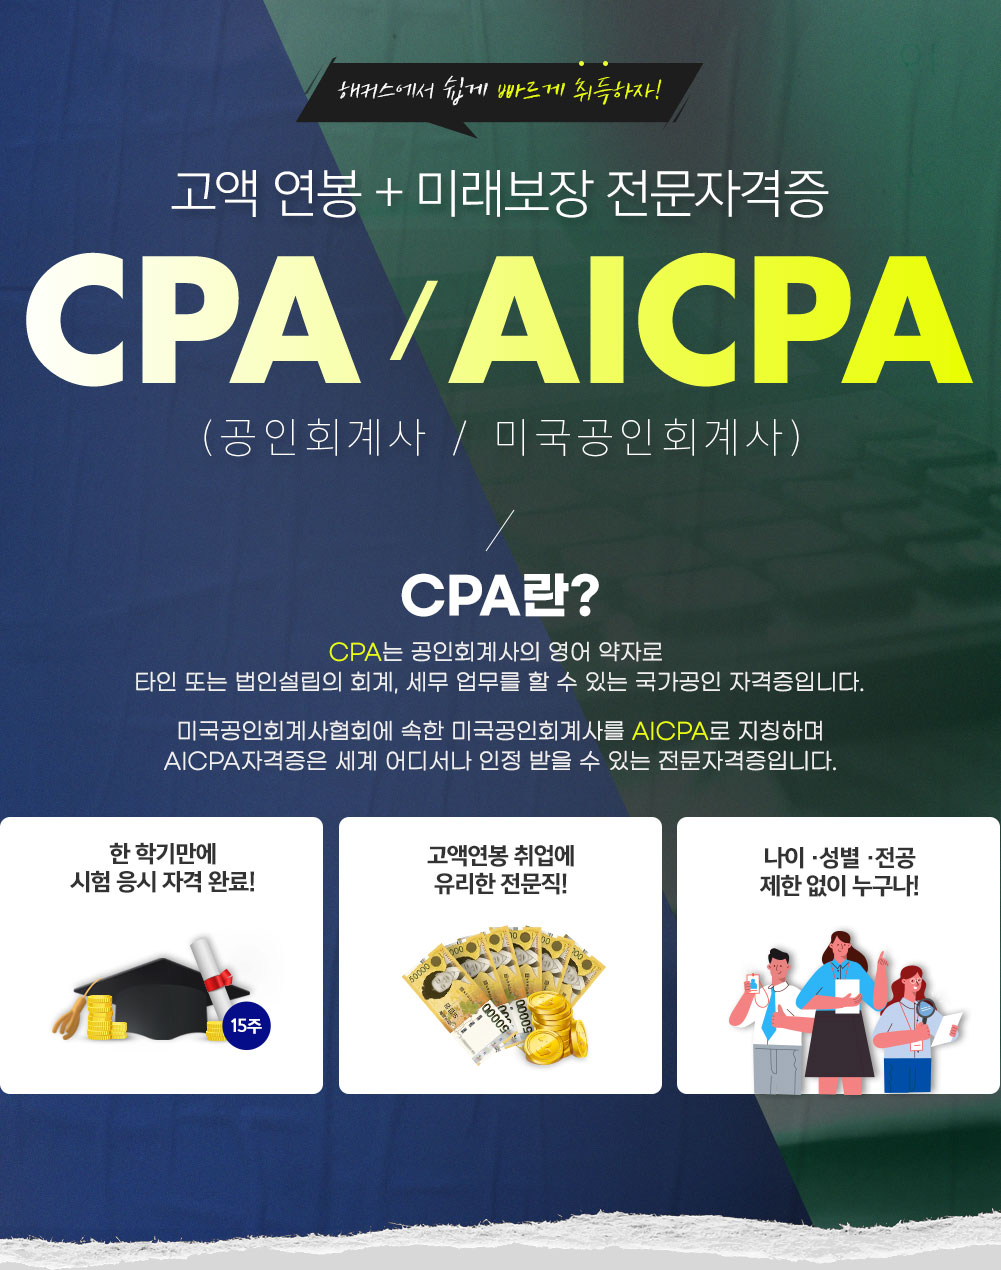 해커스에서 췹게 빠르게 취득하자 고액 연봉 + 미래보장 전문가 자격증 CPA/AICPA(공인회계사/미국공인회계사)